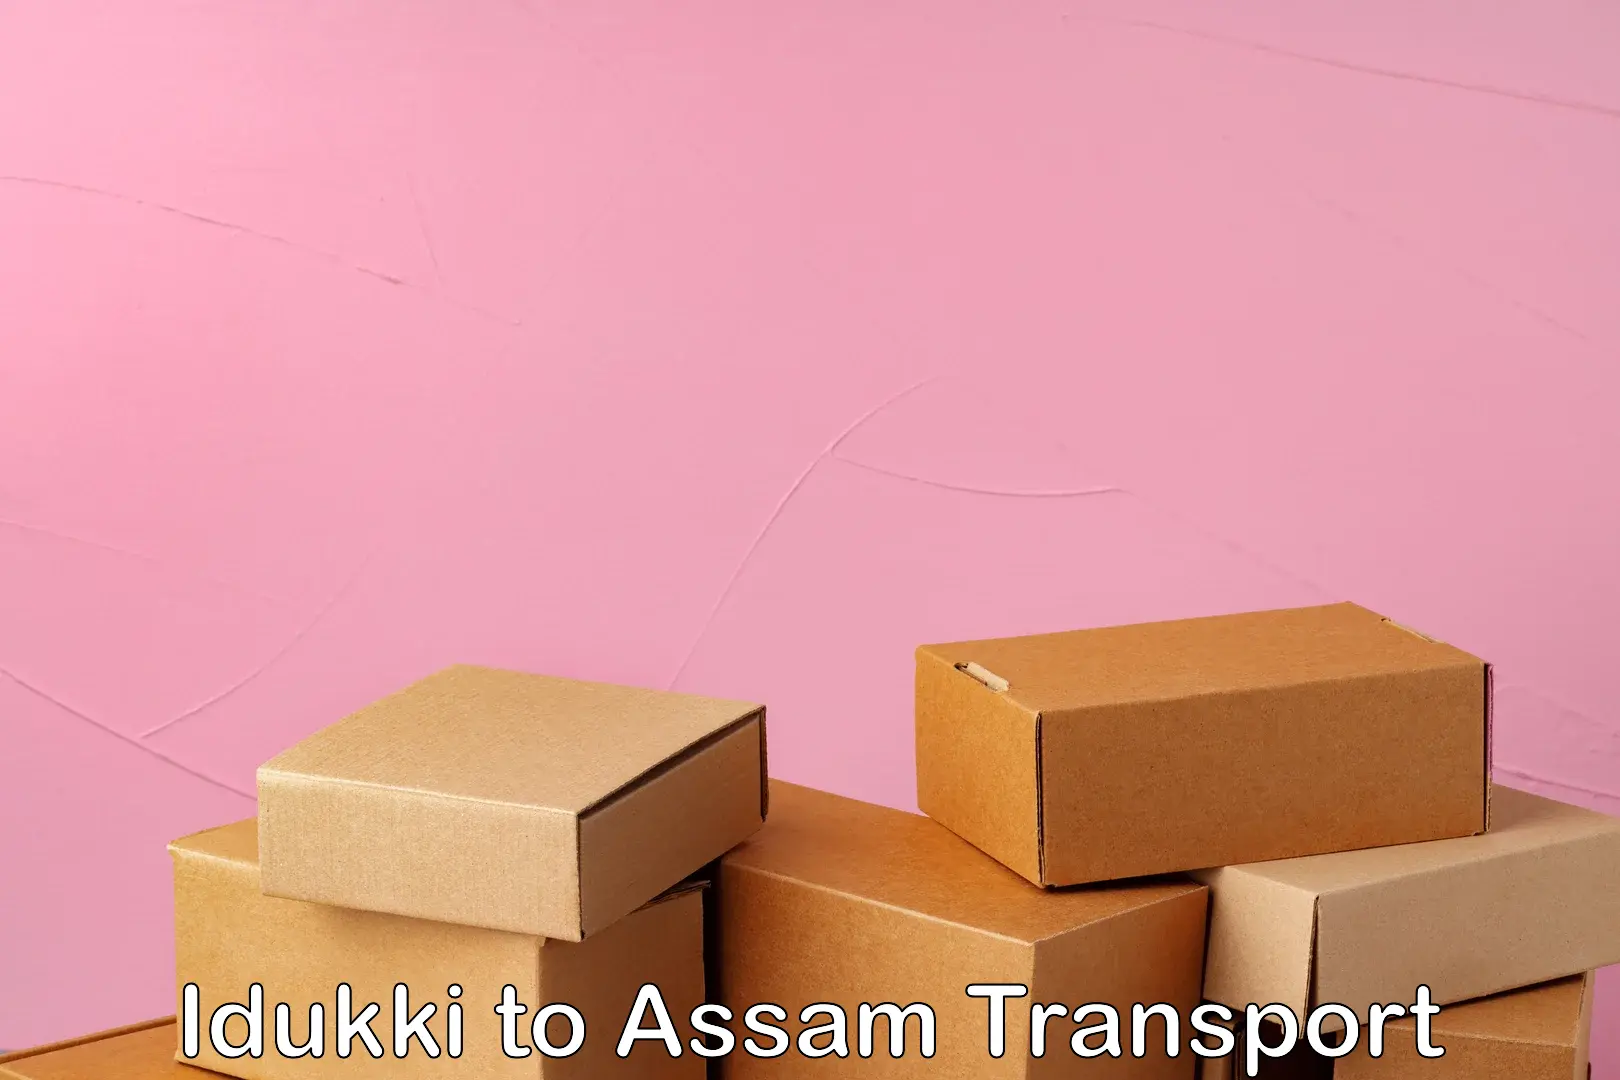 Shipping partner Idukki to Lala Assam